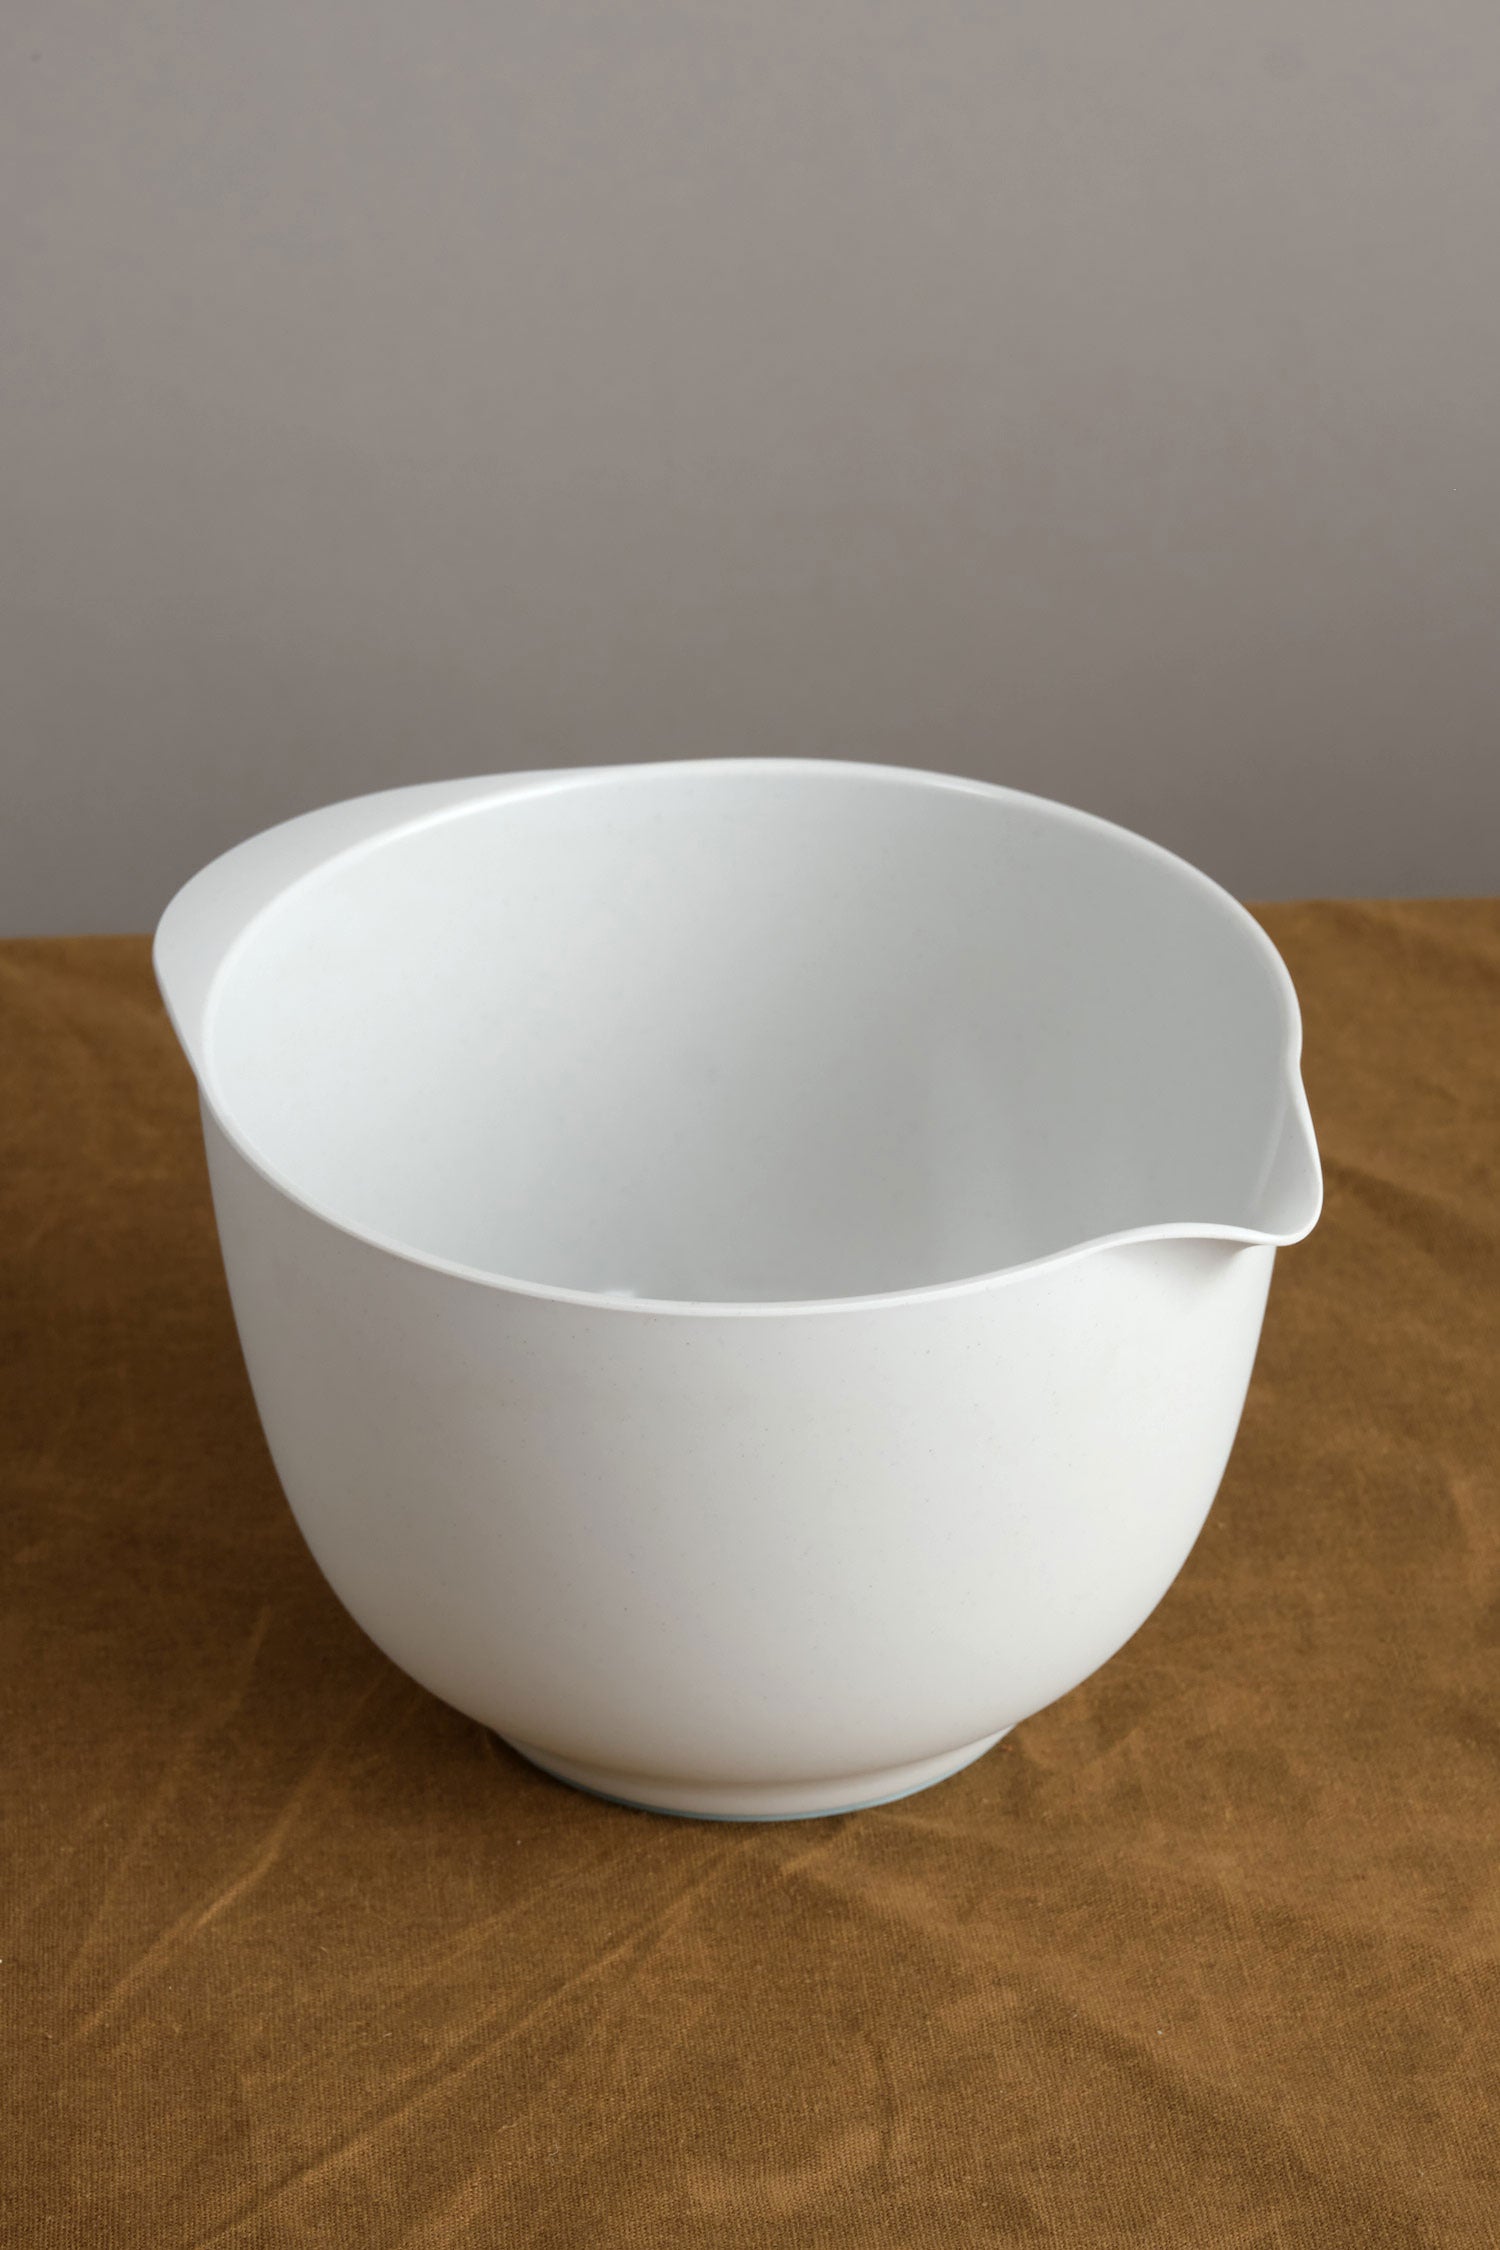 Rosti Margrethe 6-Litre Mixing Bowl, White